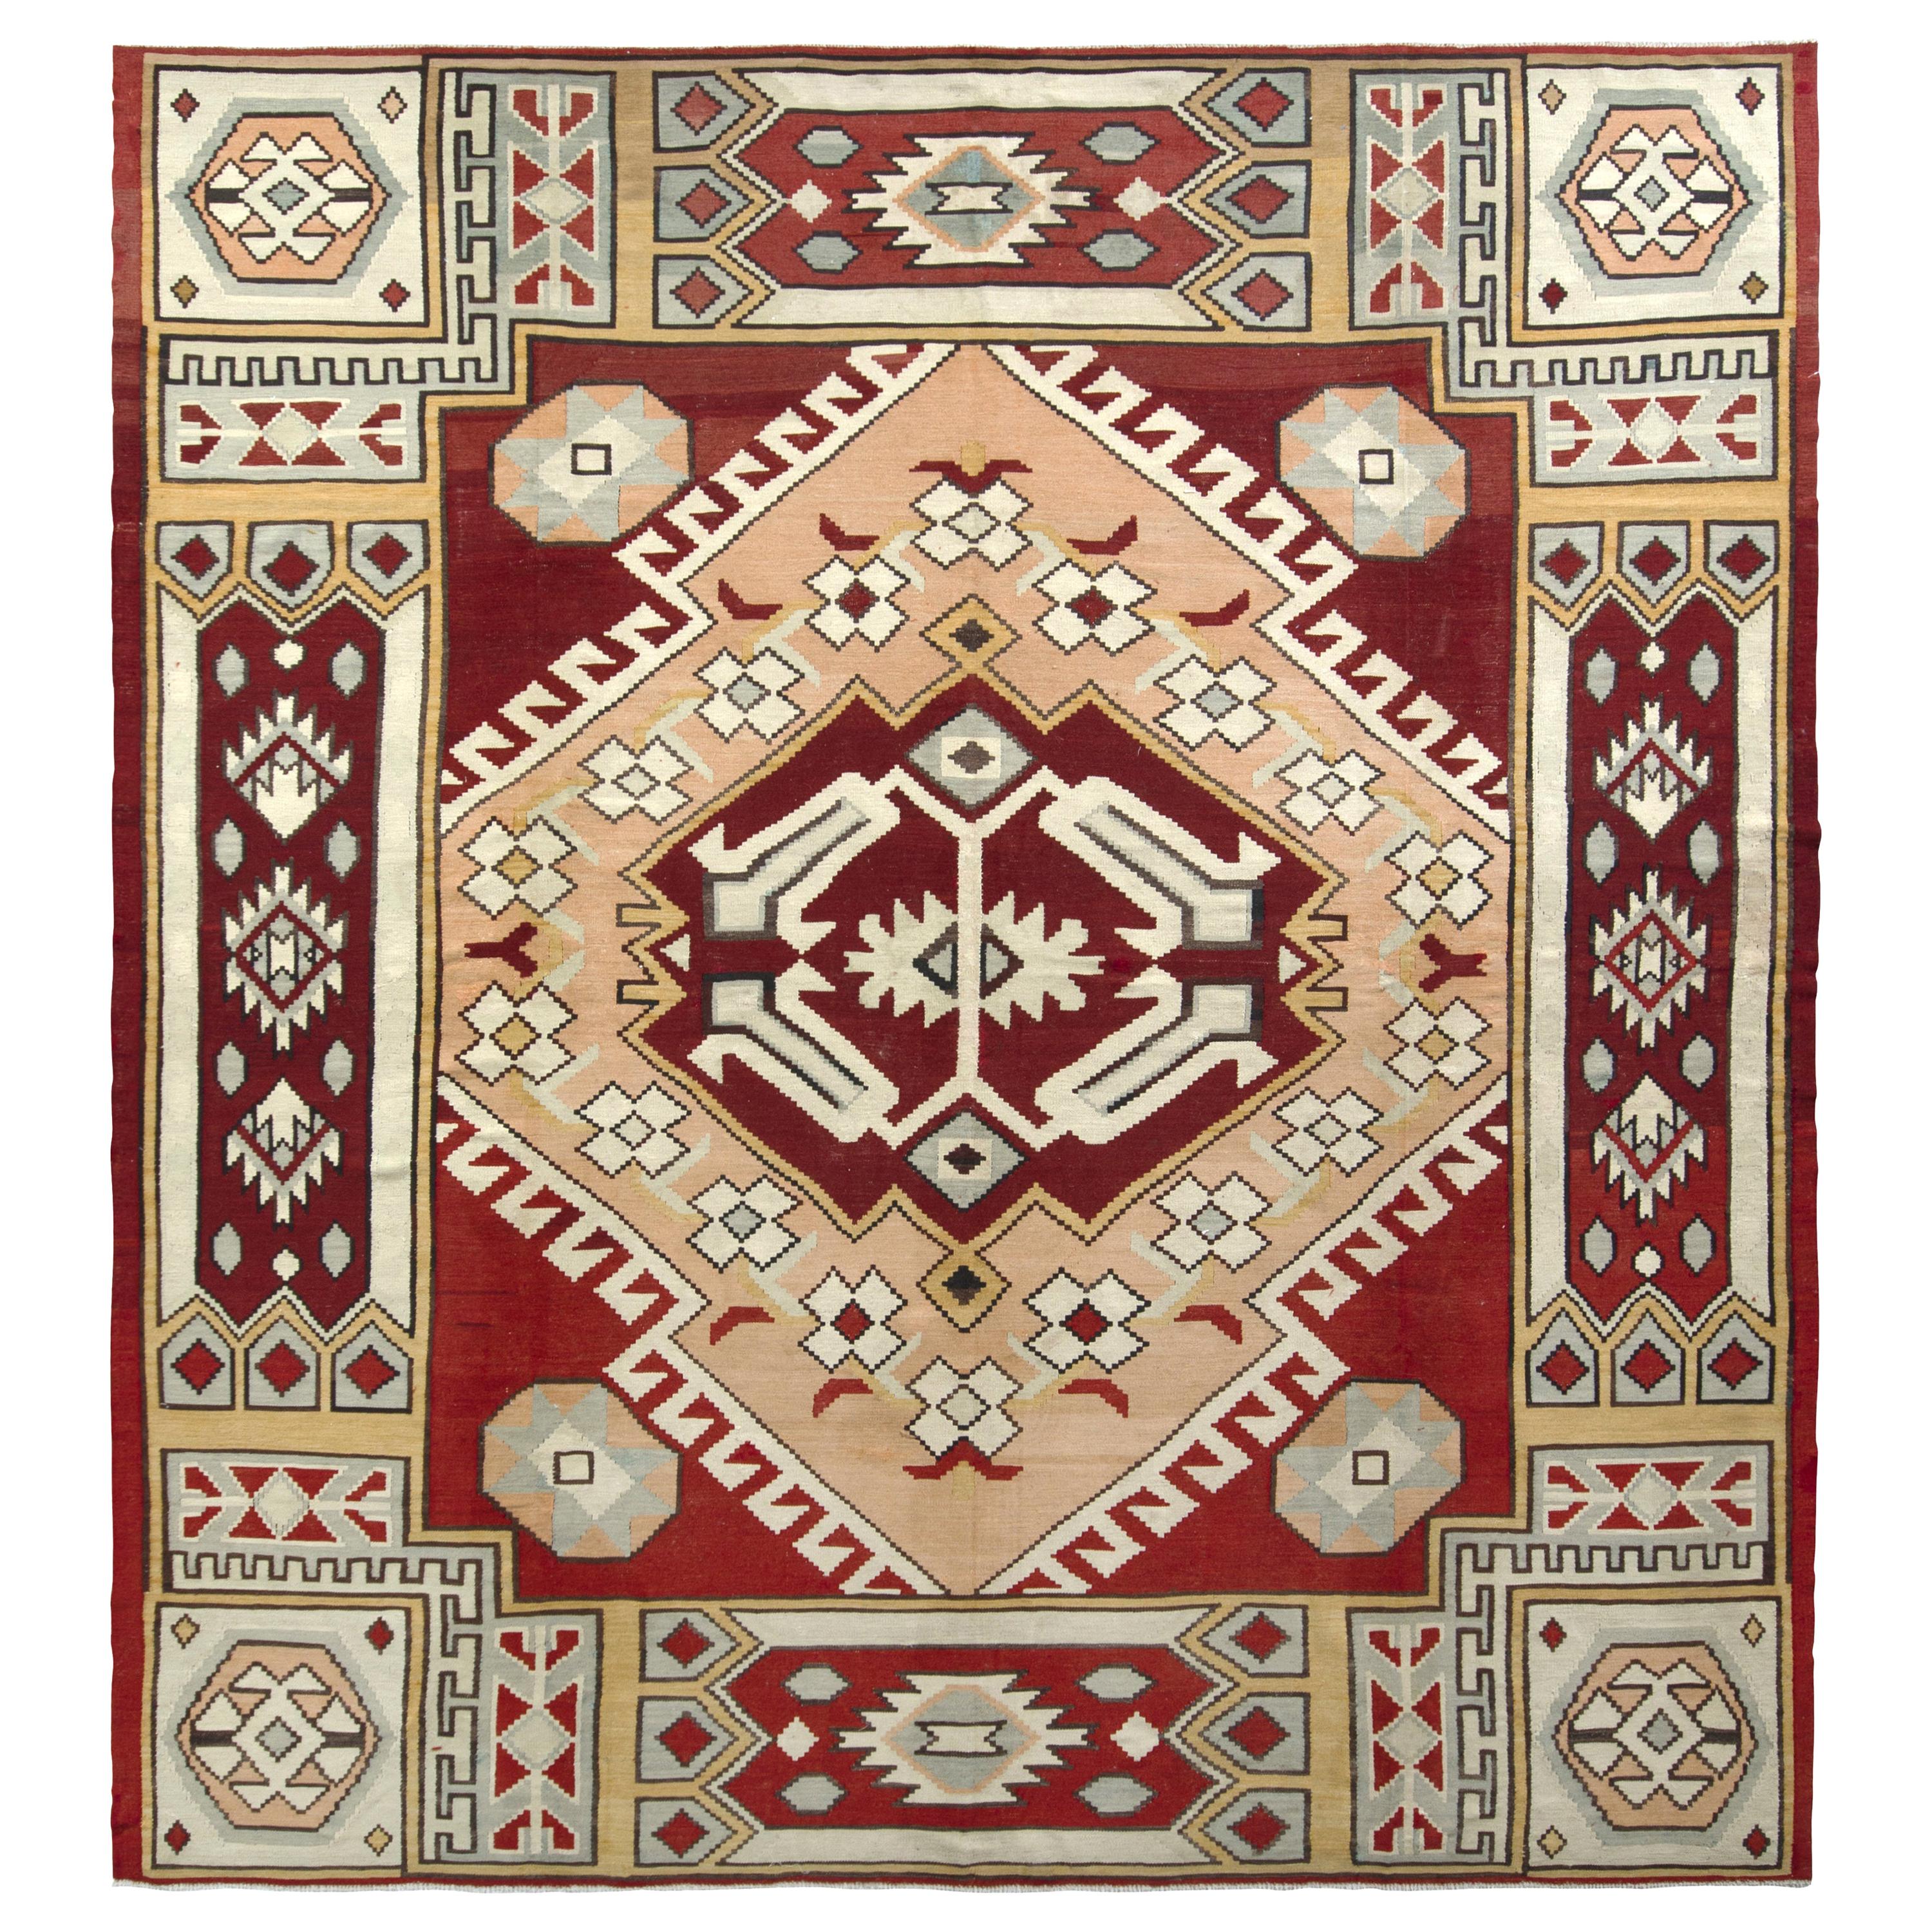 Midcentury Vintage Square Kilim Rug in Red Geometric Pattern by Rug & Kilim